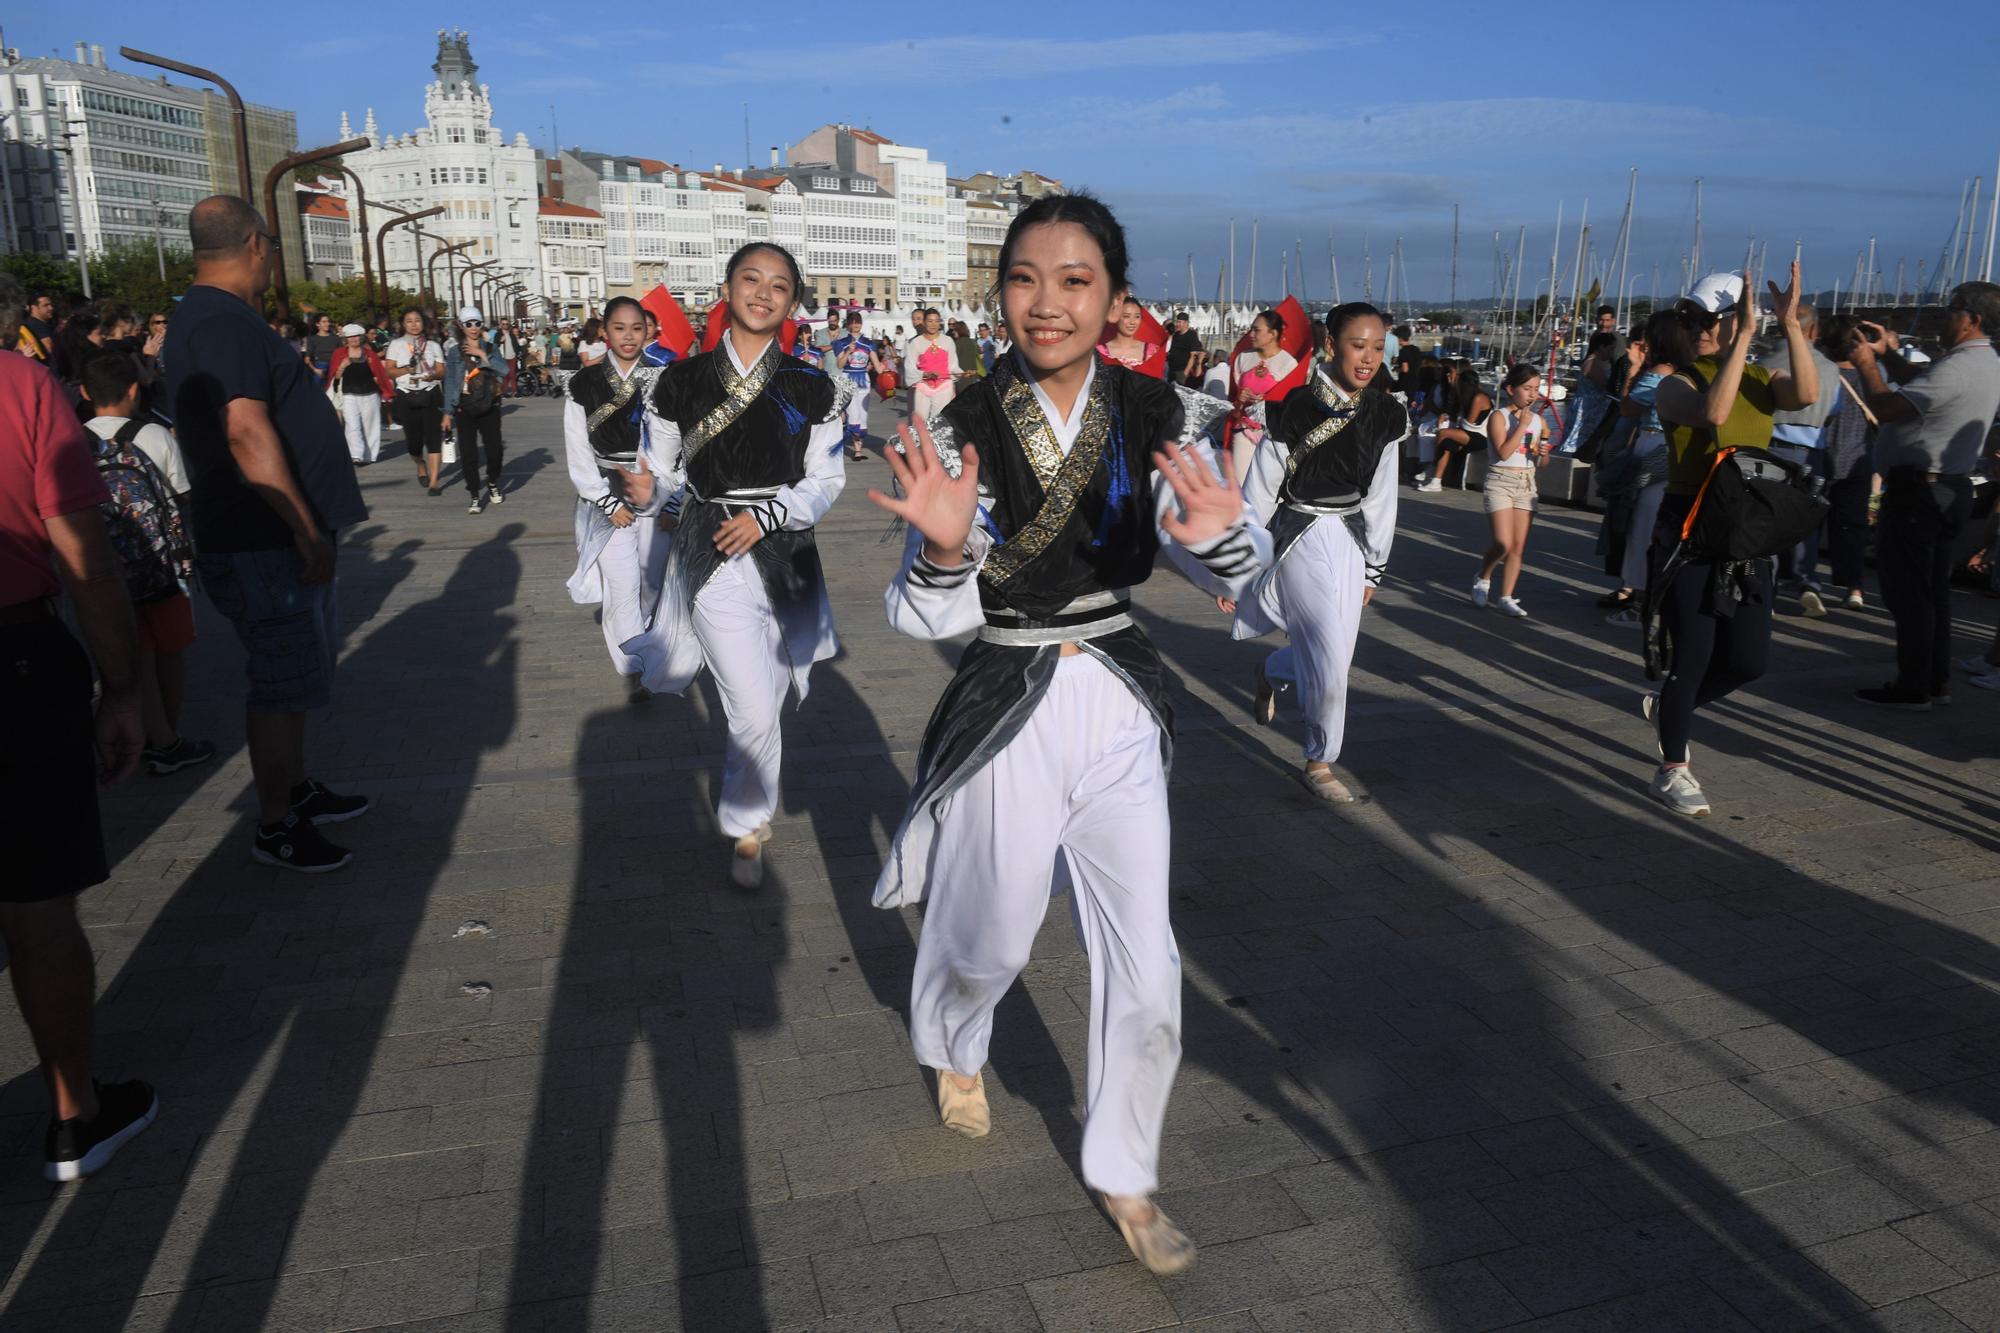 Desfile en la Marina por el Festival de Folclore Internacional en A Coruña